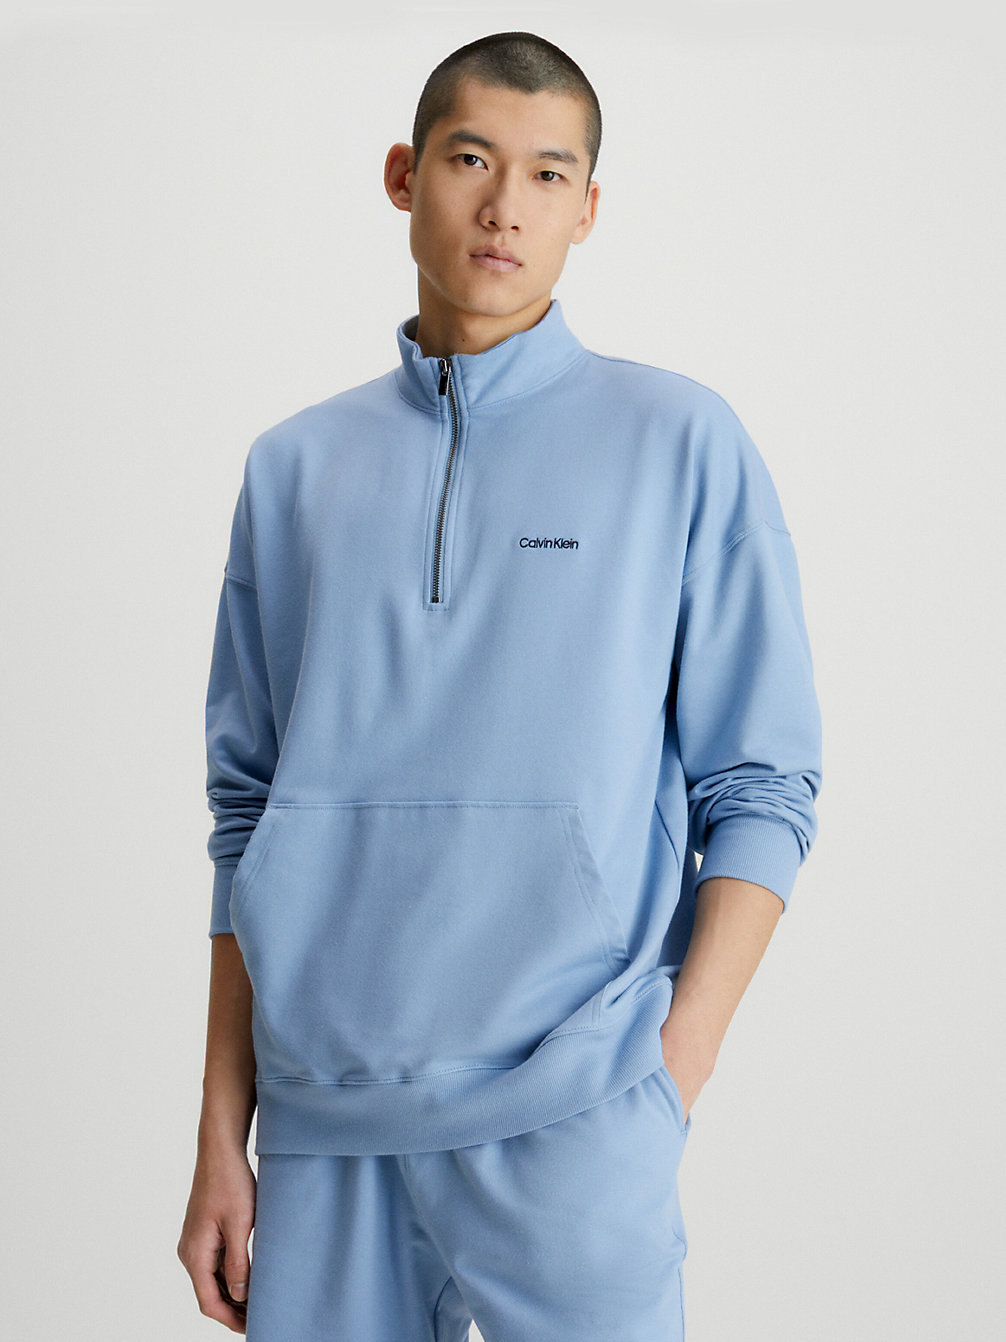 ICELAND BLUE > Loungesweatshirt - Modern Cotton > undefined heren - Calvin Klein